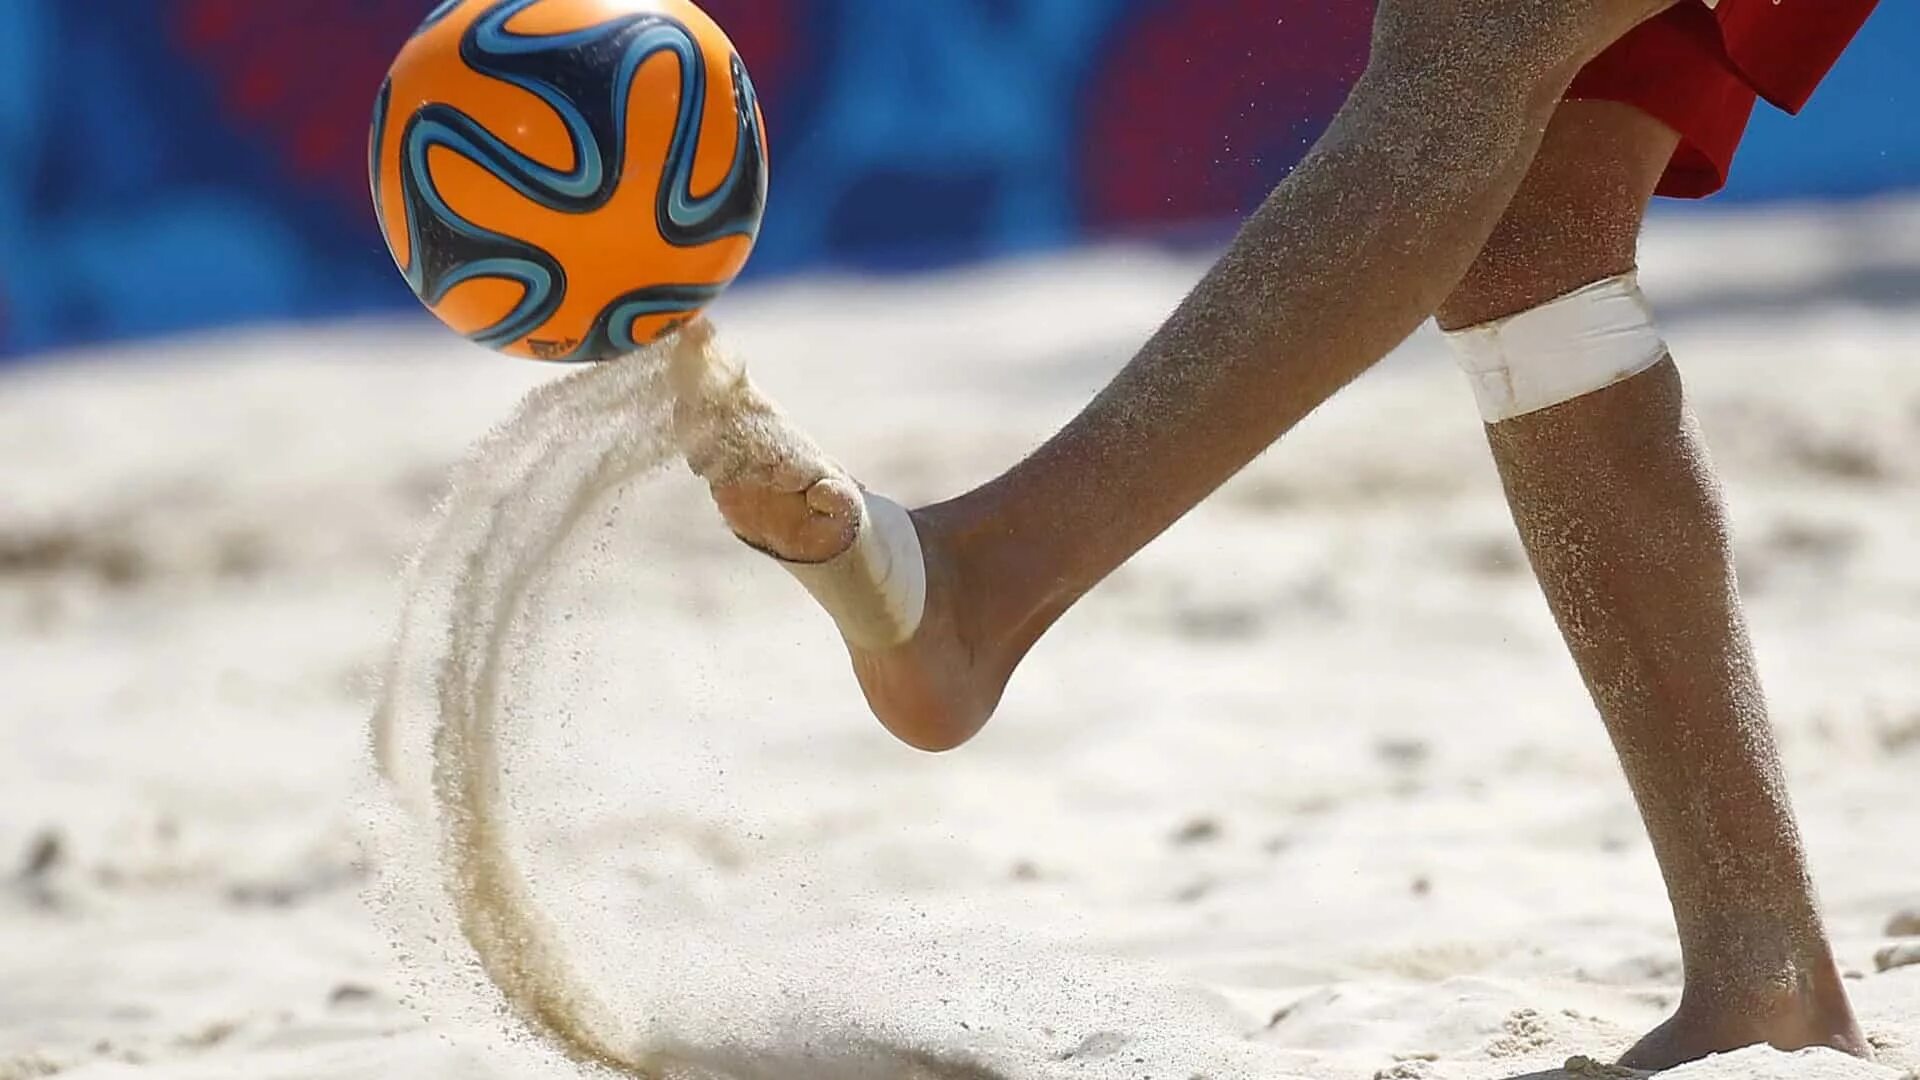 Beach soccer world. Мяч для пляжного футбола. Ввод мяча из аута. Футбол на песке. Ввод аута в пляжном футболе.